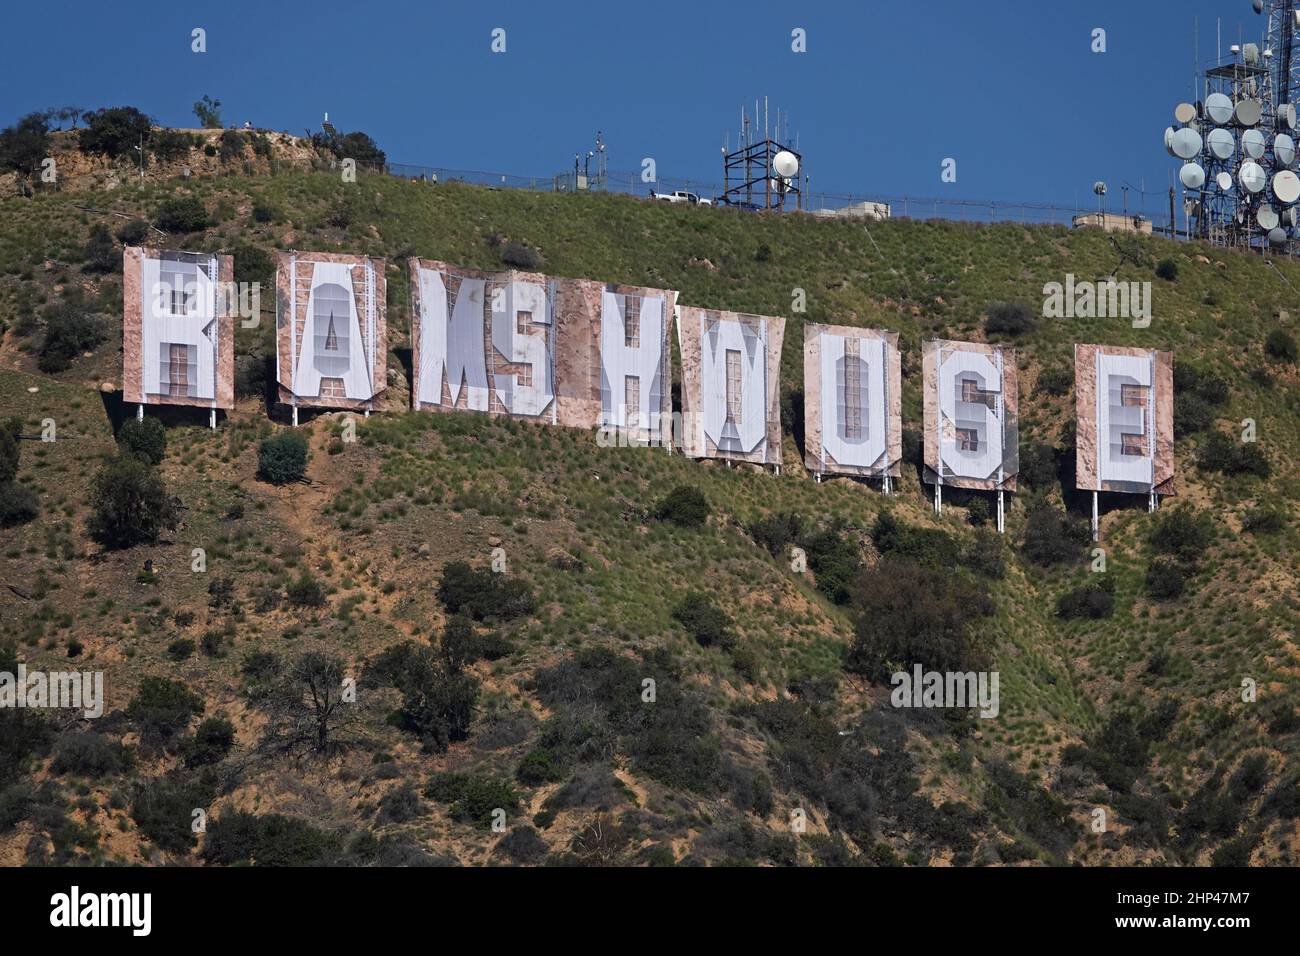 Hollywood, CA / USA - 16 febbraio 2022: I banner che scortano la CASA DEI ARIETI sono mostrati da vicino, coprendo le lettere del simbolo di Hollywood. Foto Stock